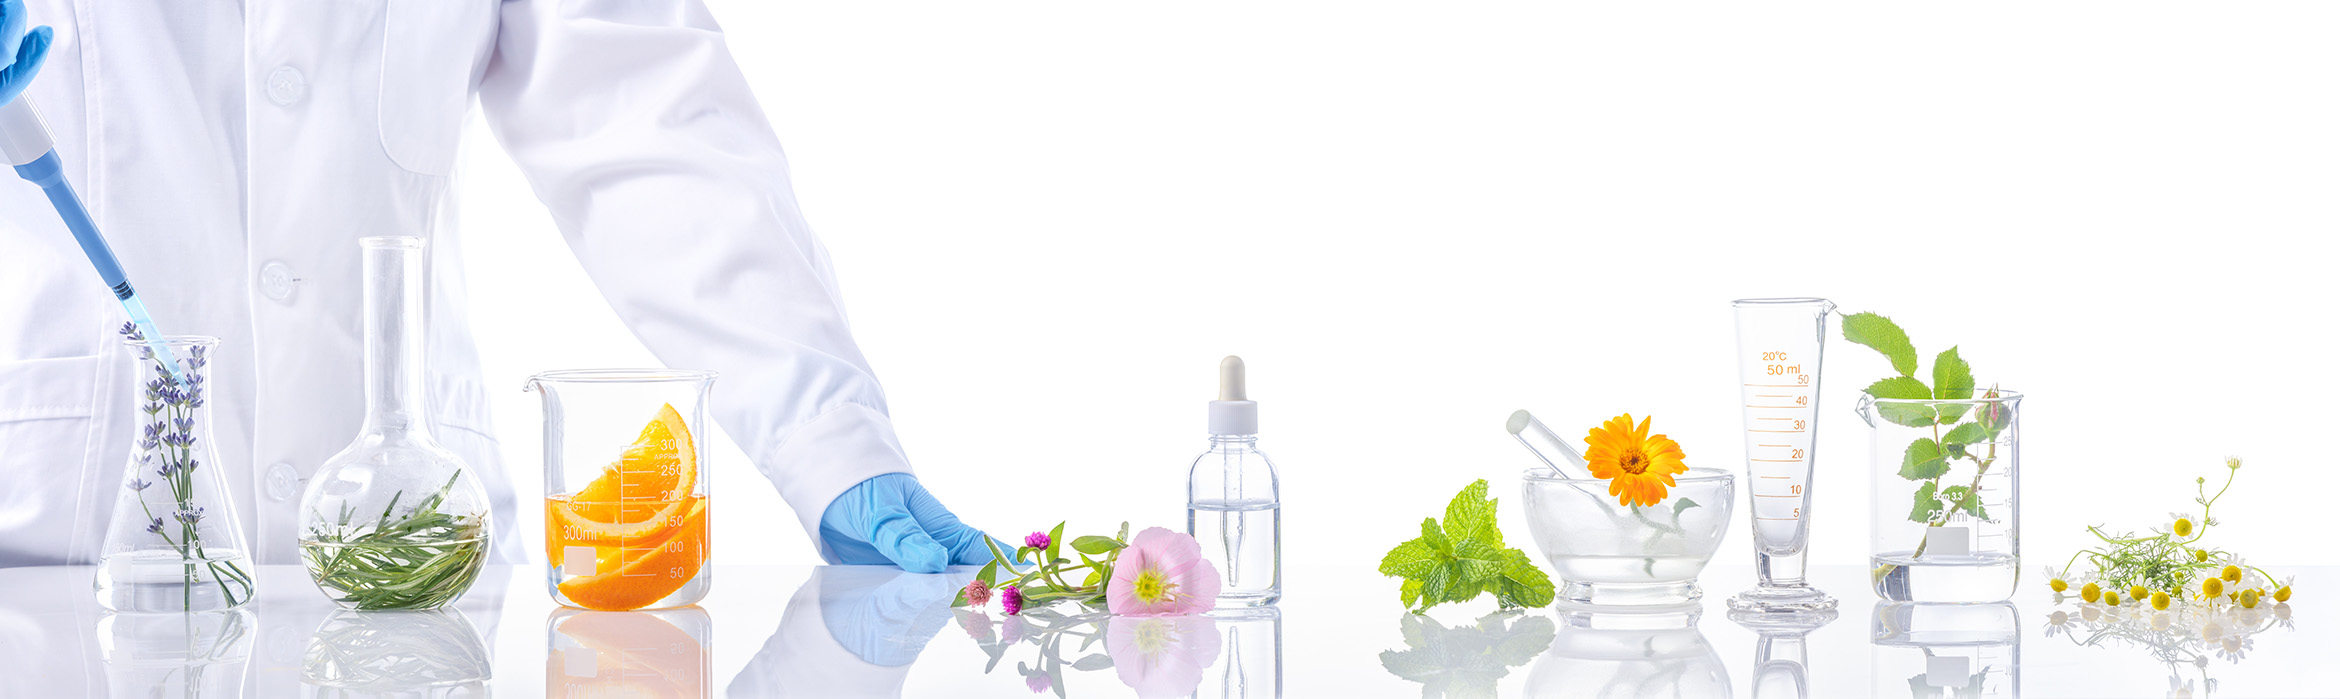 Laboratorio investigacion de alimentos y plantas